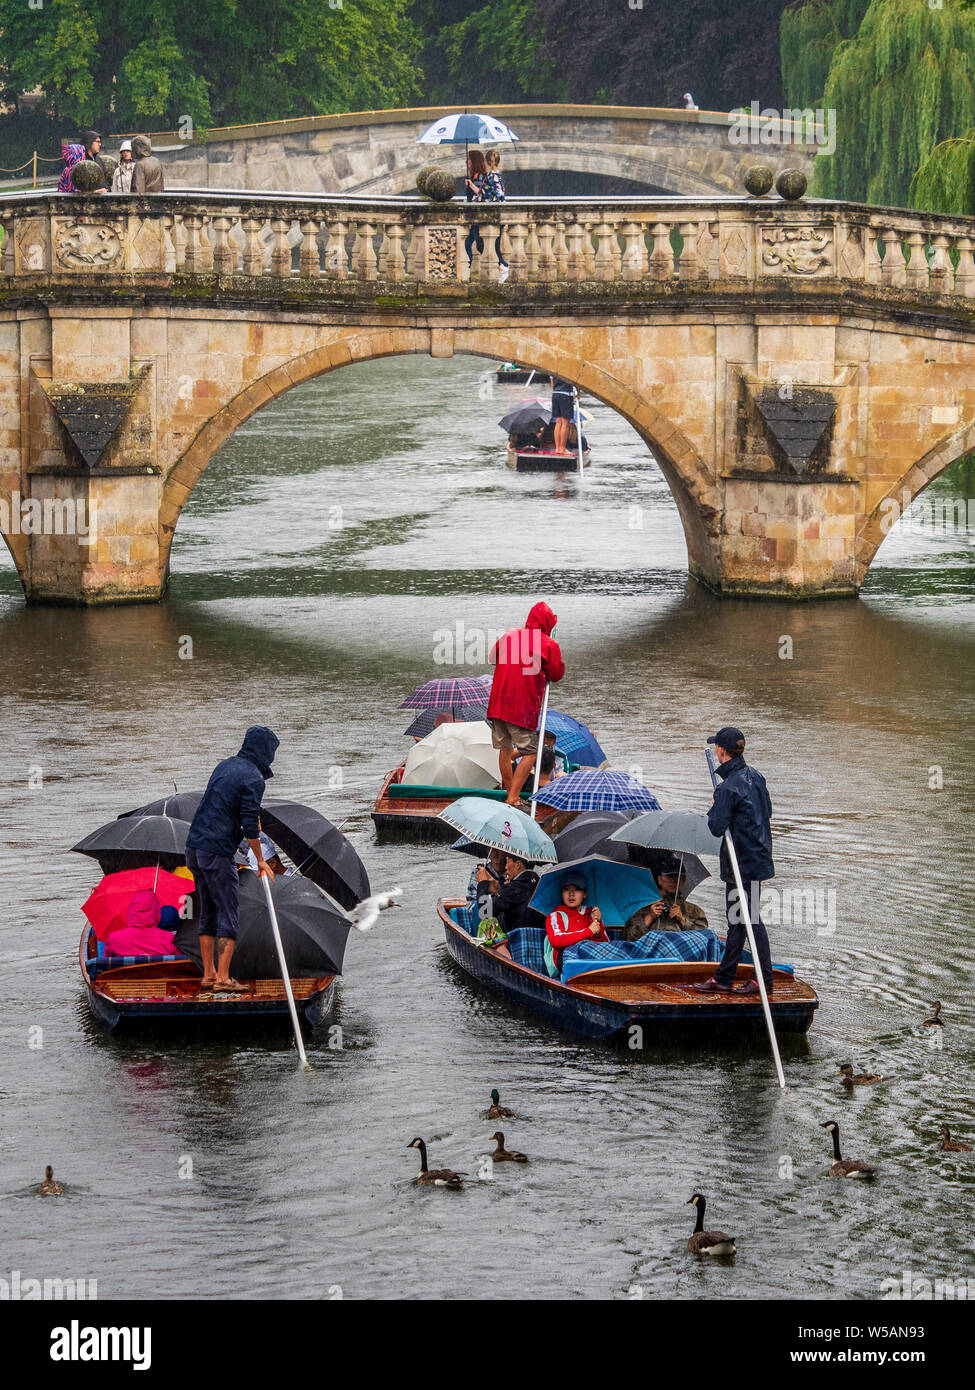 Remar en la lluvia Cambridge patos y gansos siga punts lleno de turistas refugiarse bajo un paraguas durante las fuertes lluvias en Cambridge, Reino Unido Foto de stock